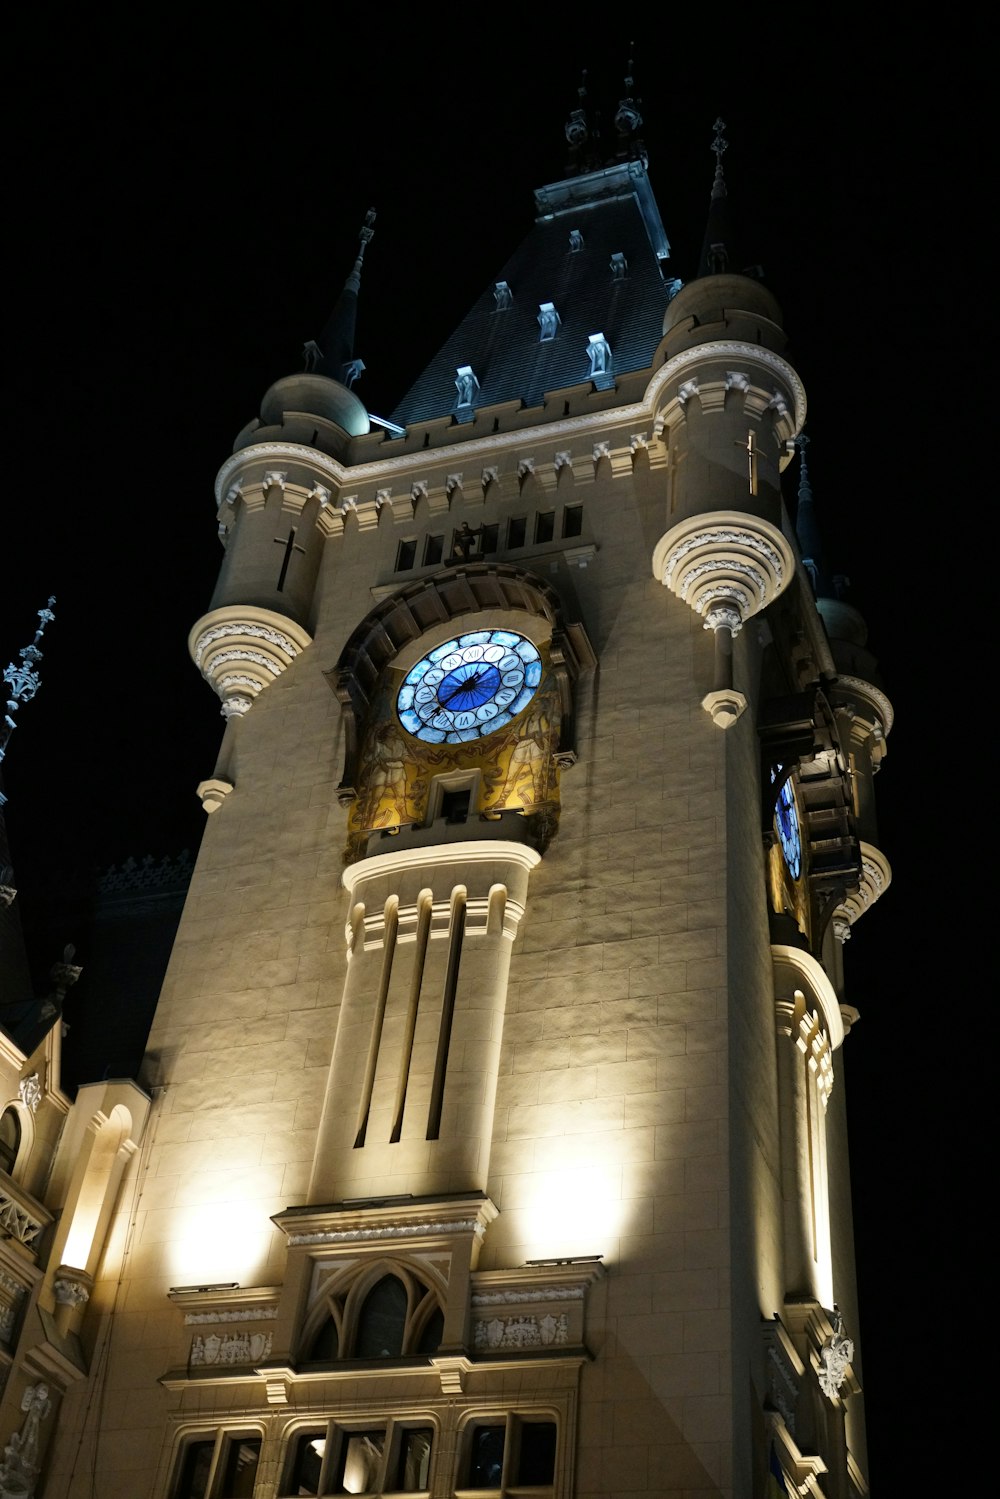 Una gran torre del reloj iluminada por la noche